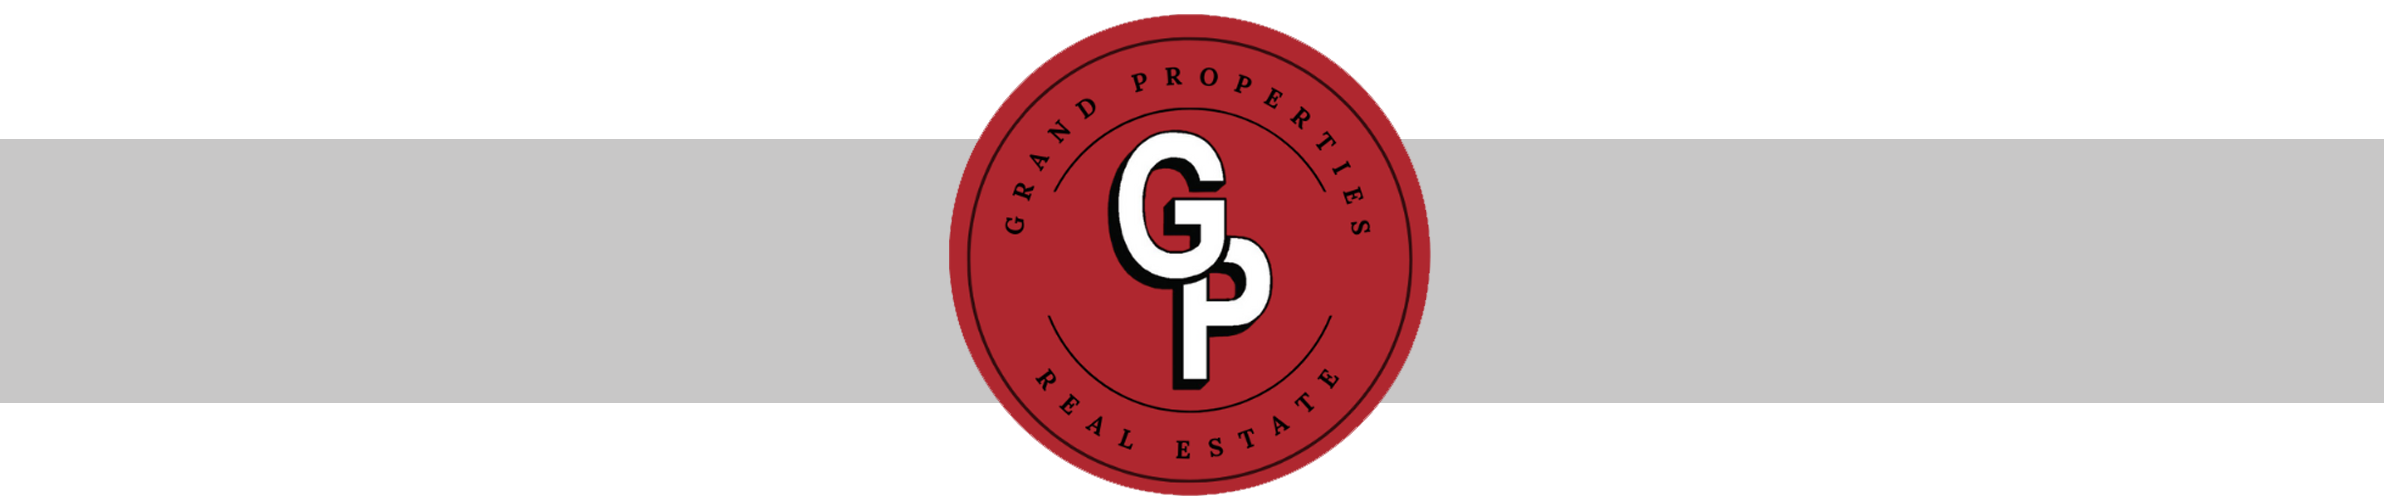 Grand Properties Real Estate Team